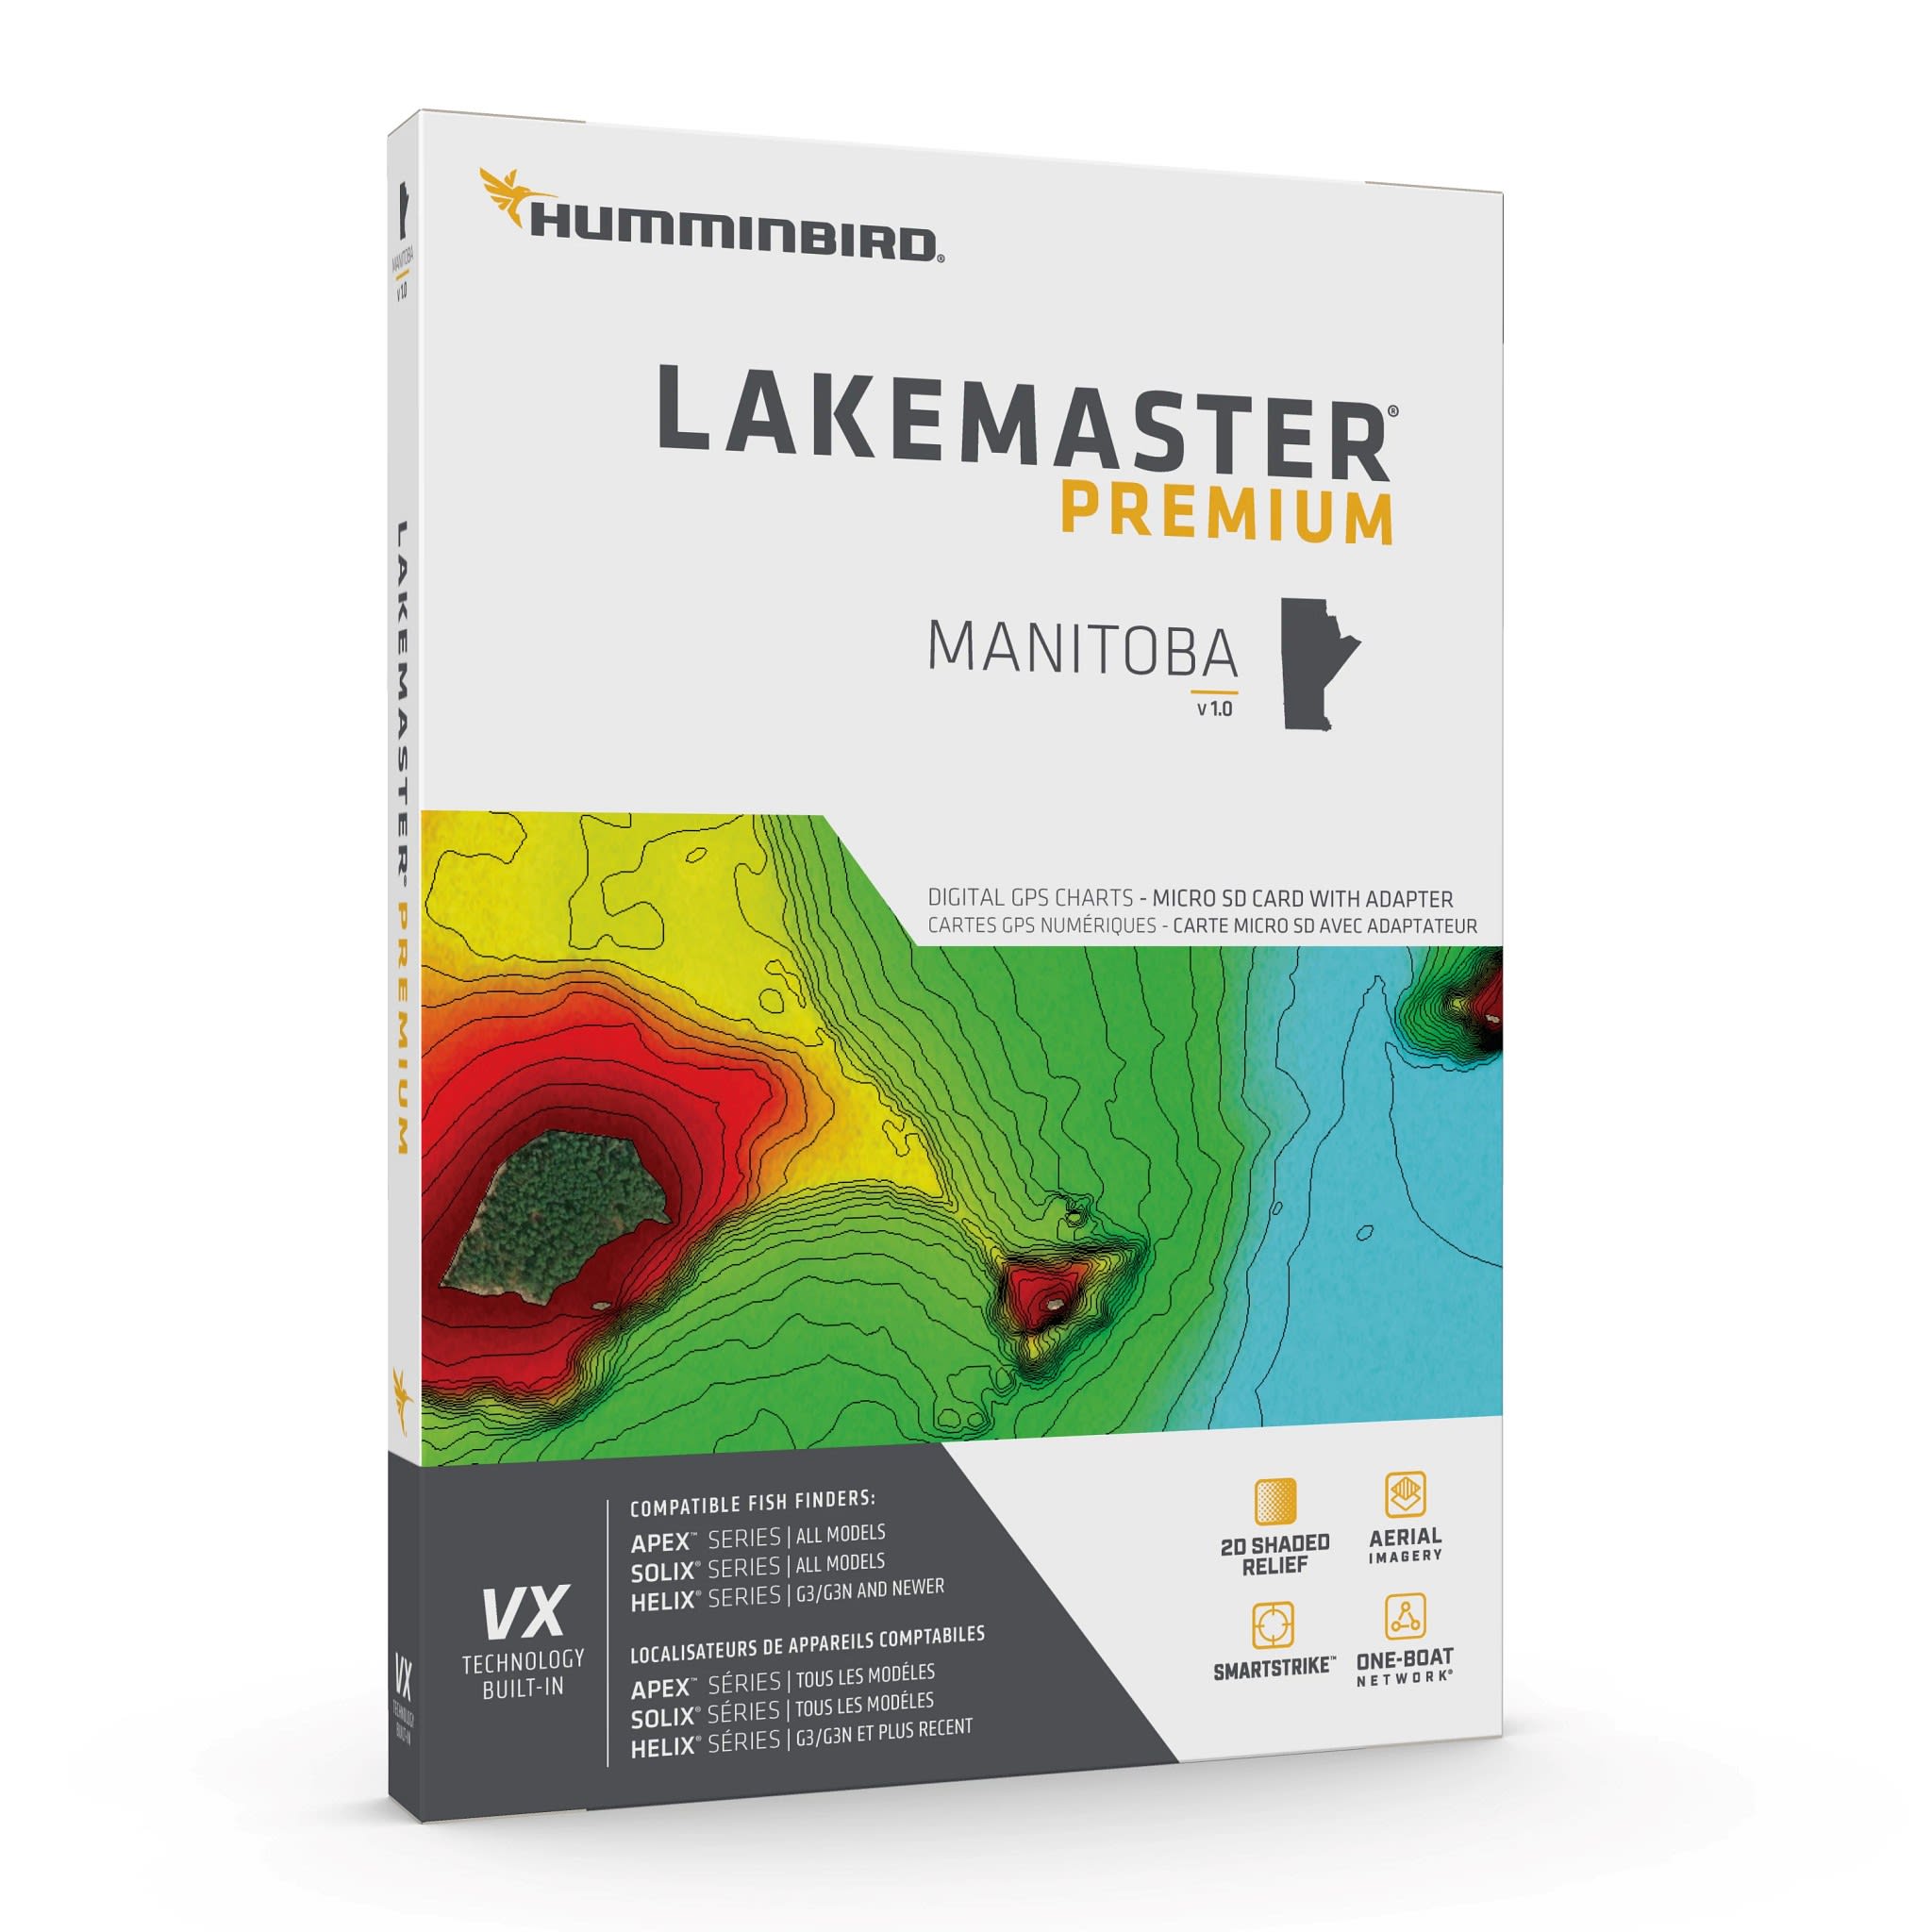 Humminbird® LakeMaster® VX Premium - Manitoba